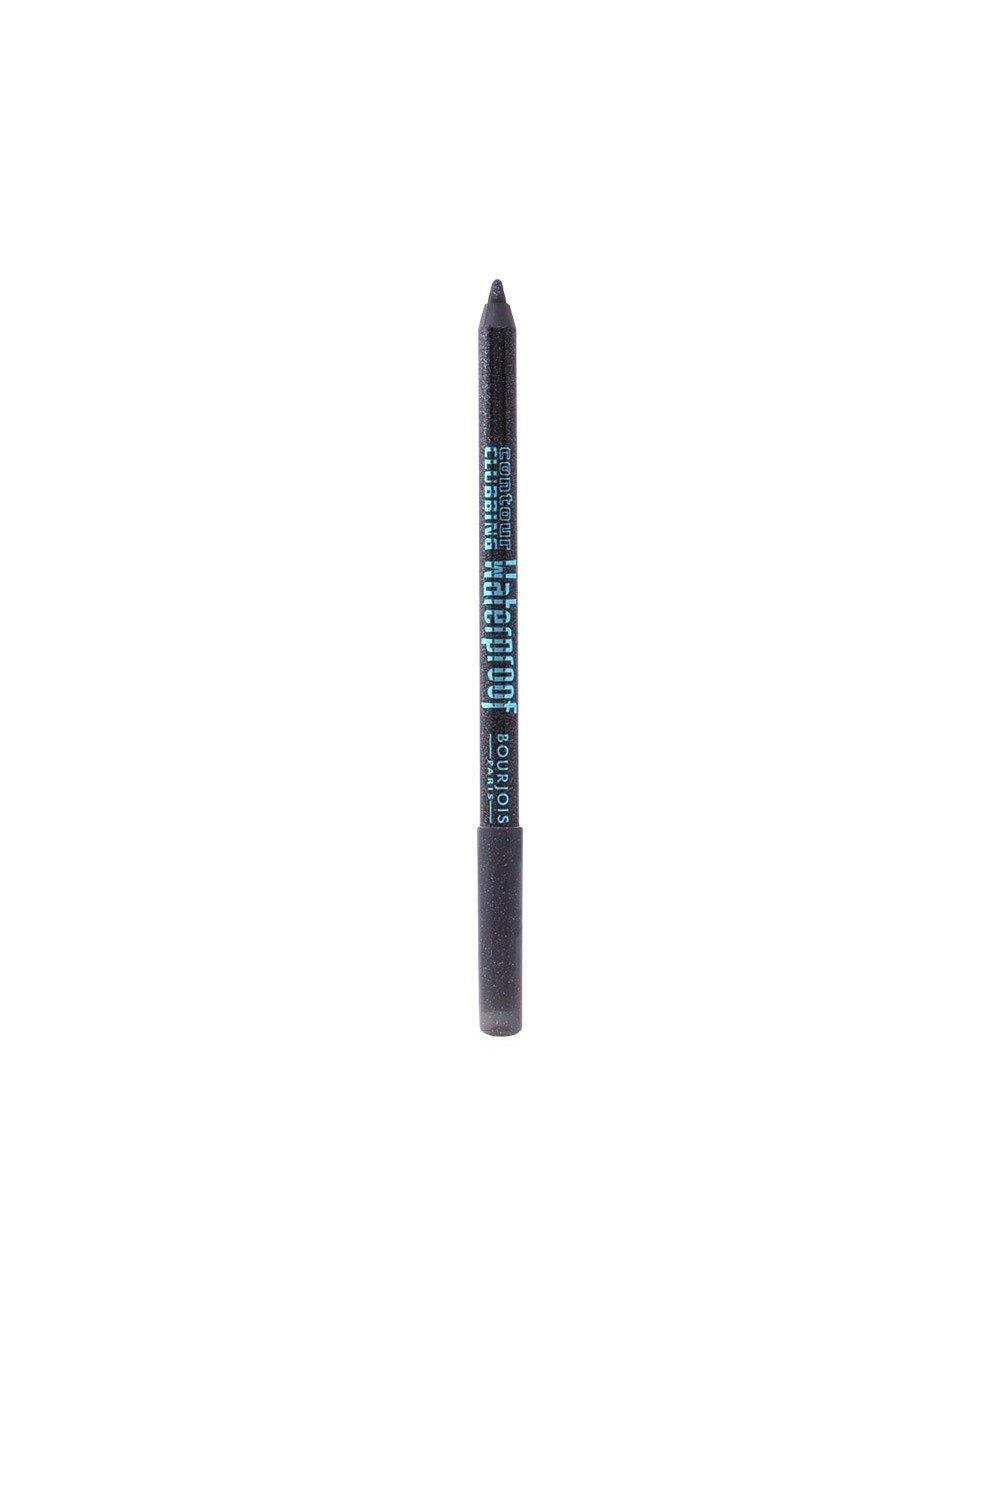 BOURJOIS - Contour Clubbing Waterproof Eye Pencil Noir Paillete